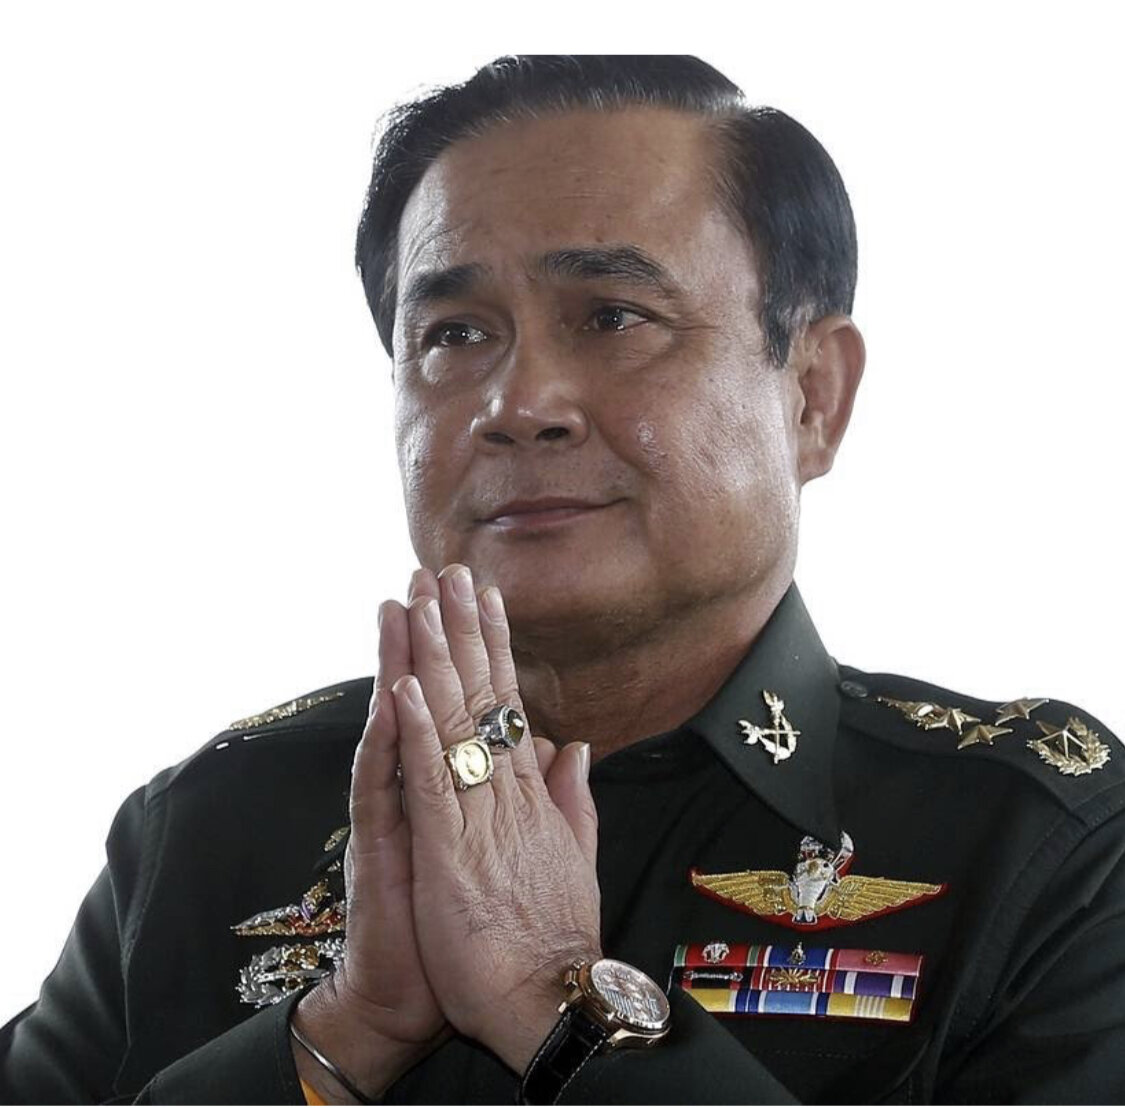 Таиланд только что закрыл границы и ввёл чрезвычайное положение. Что это значит